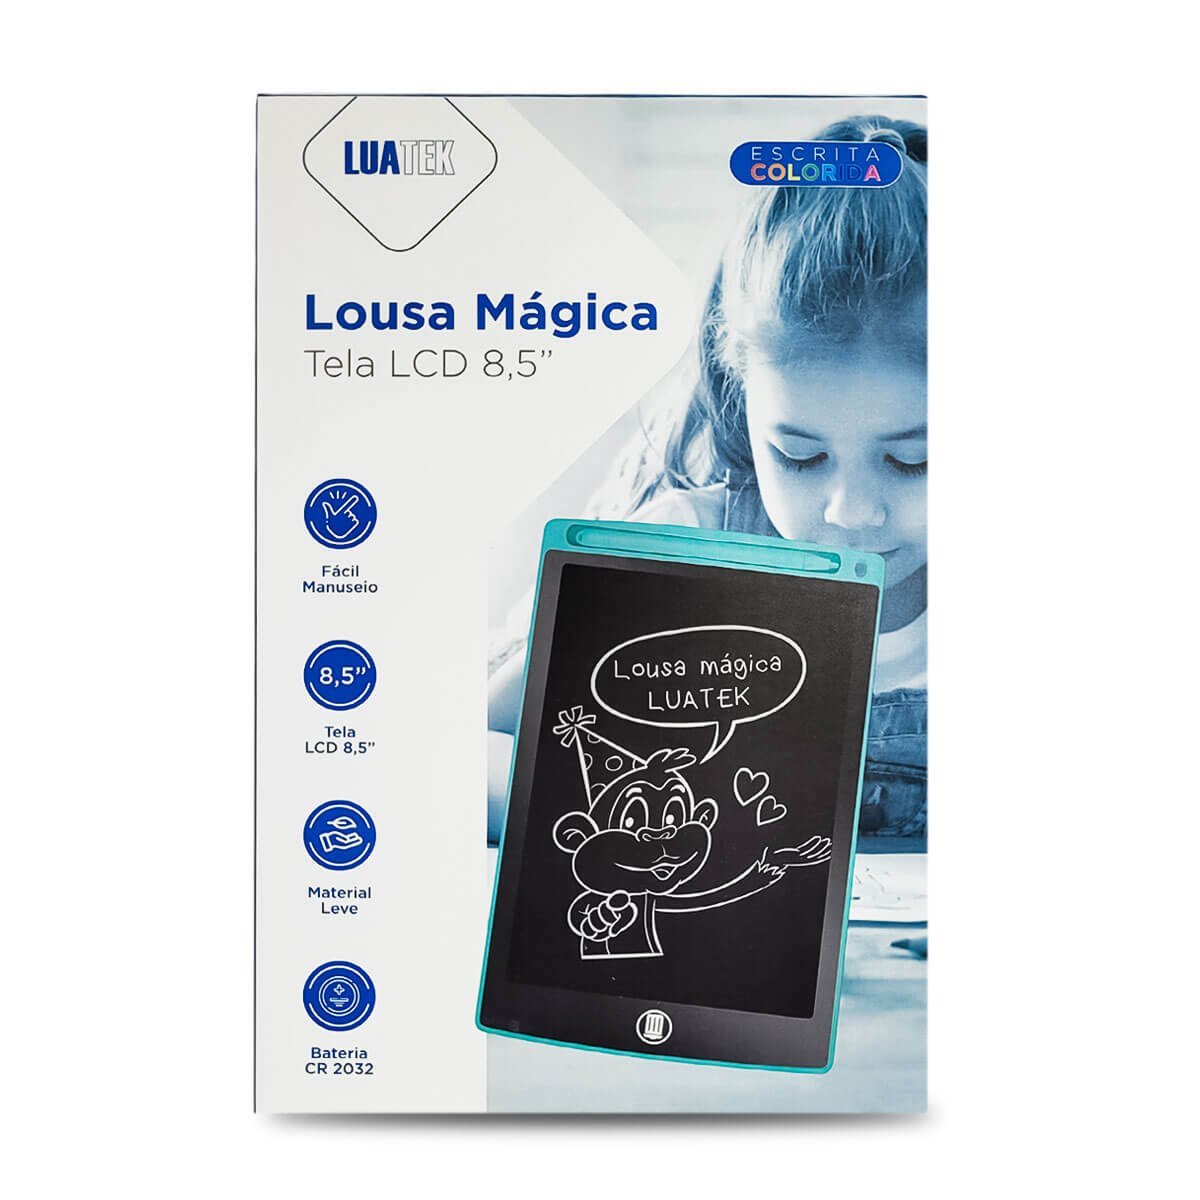 Lousa Digital Lcd Tablet para Escrever e Desenhos Colorida Luatek - 3